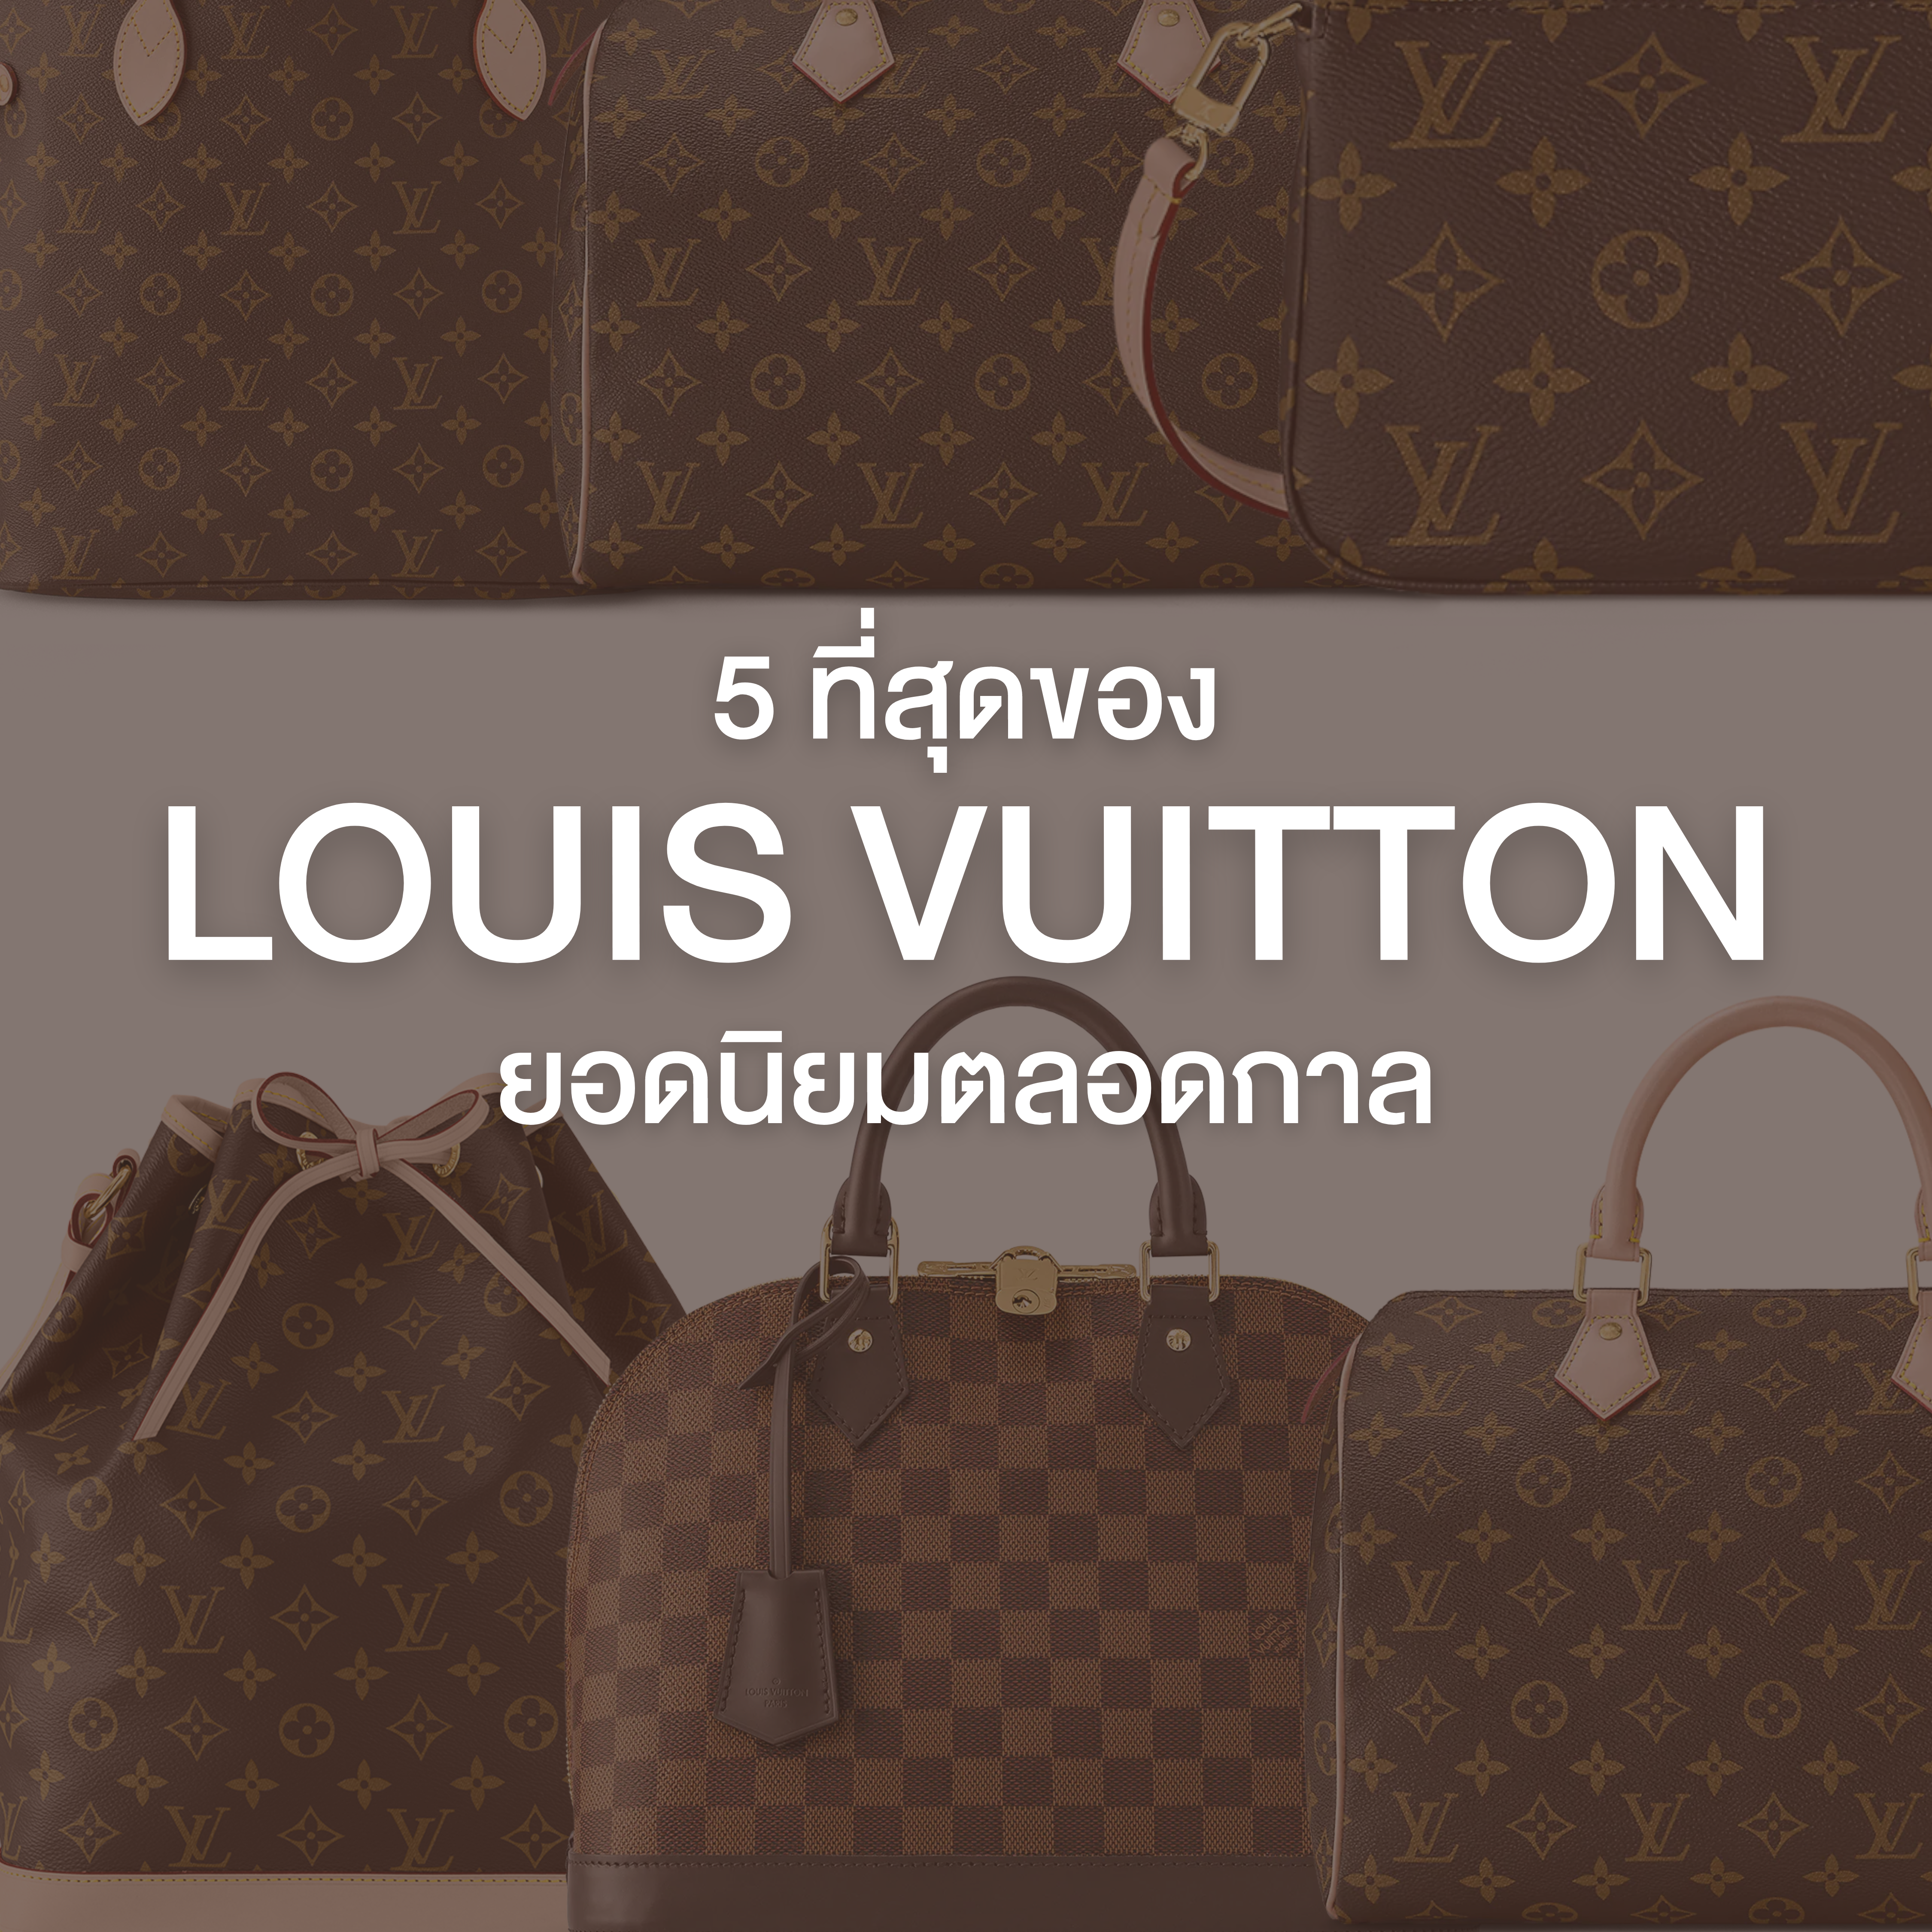 รวม 5 ที่สุดของ Louis Vuitton Bag ยอดนิยมตลอดกาล